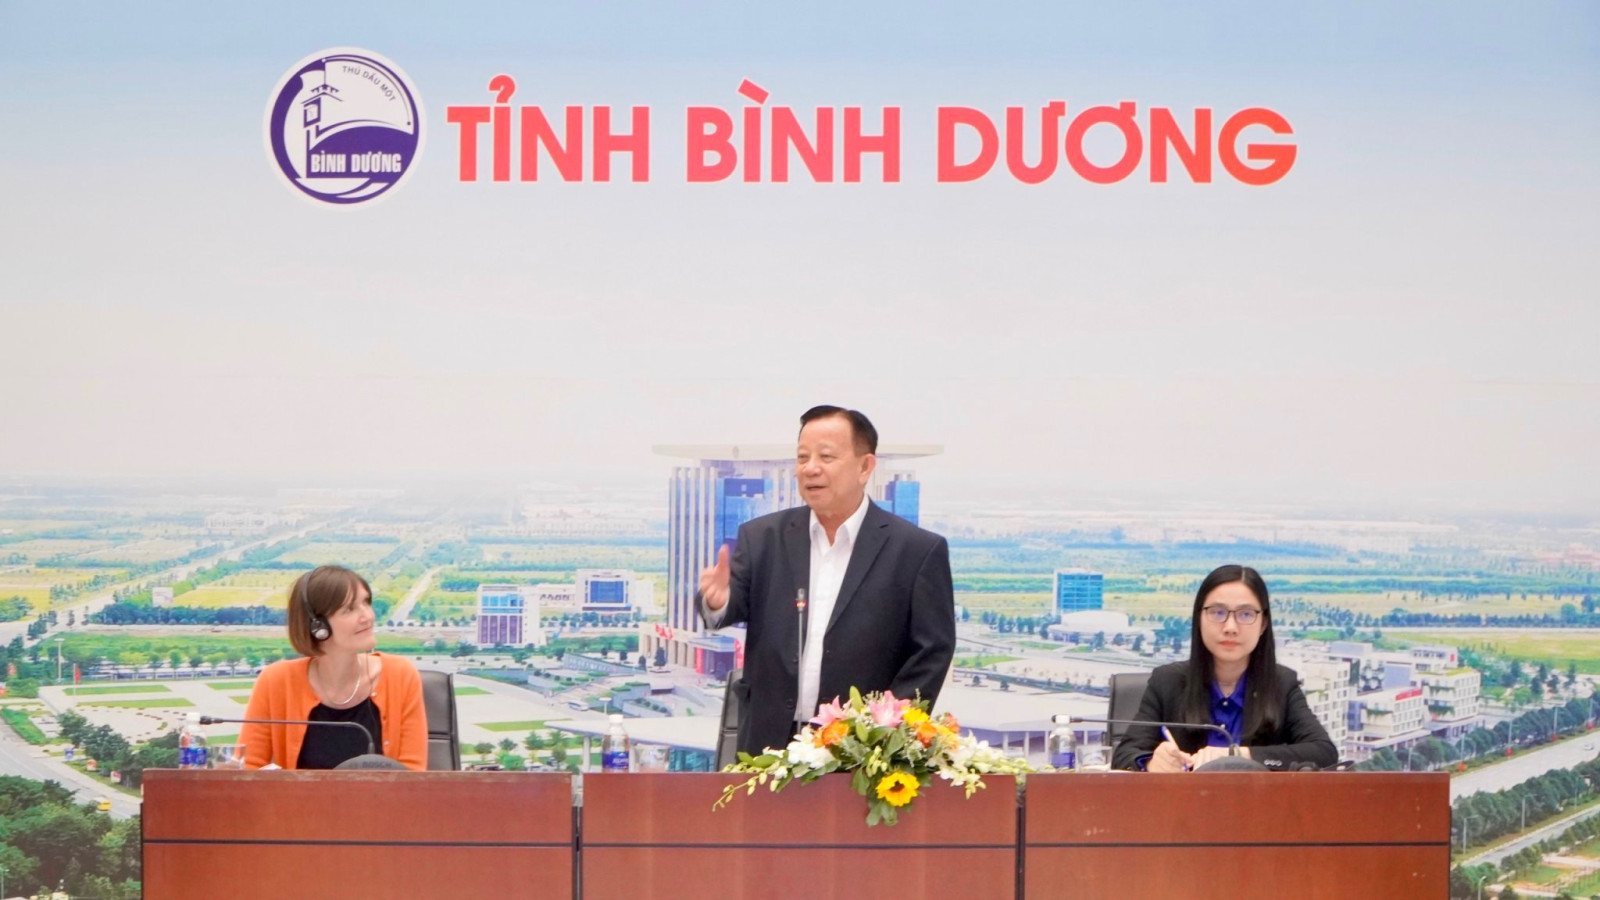 Đồng chí Nguyễn Văn Hùng, Chủ tịch Hội đồng Quản trị Tổng Công ty Becamex IDC trao đổi với đoàn về Đề án thành phố thông minh và Vùng đổi mới sáng tạo.